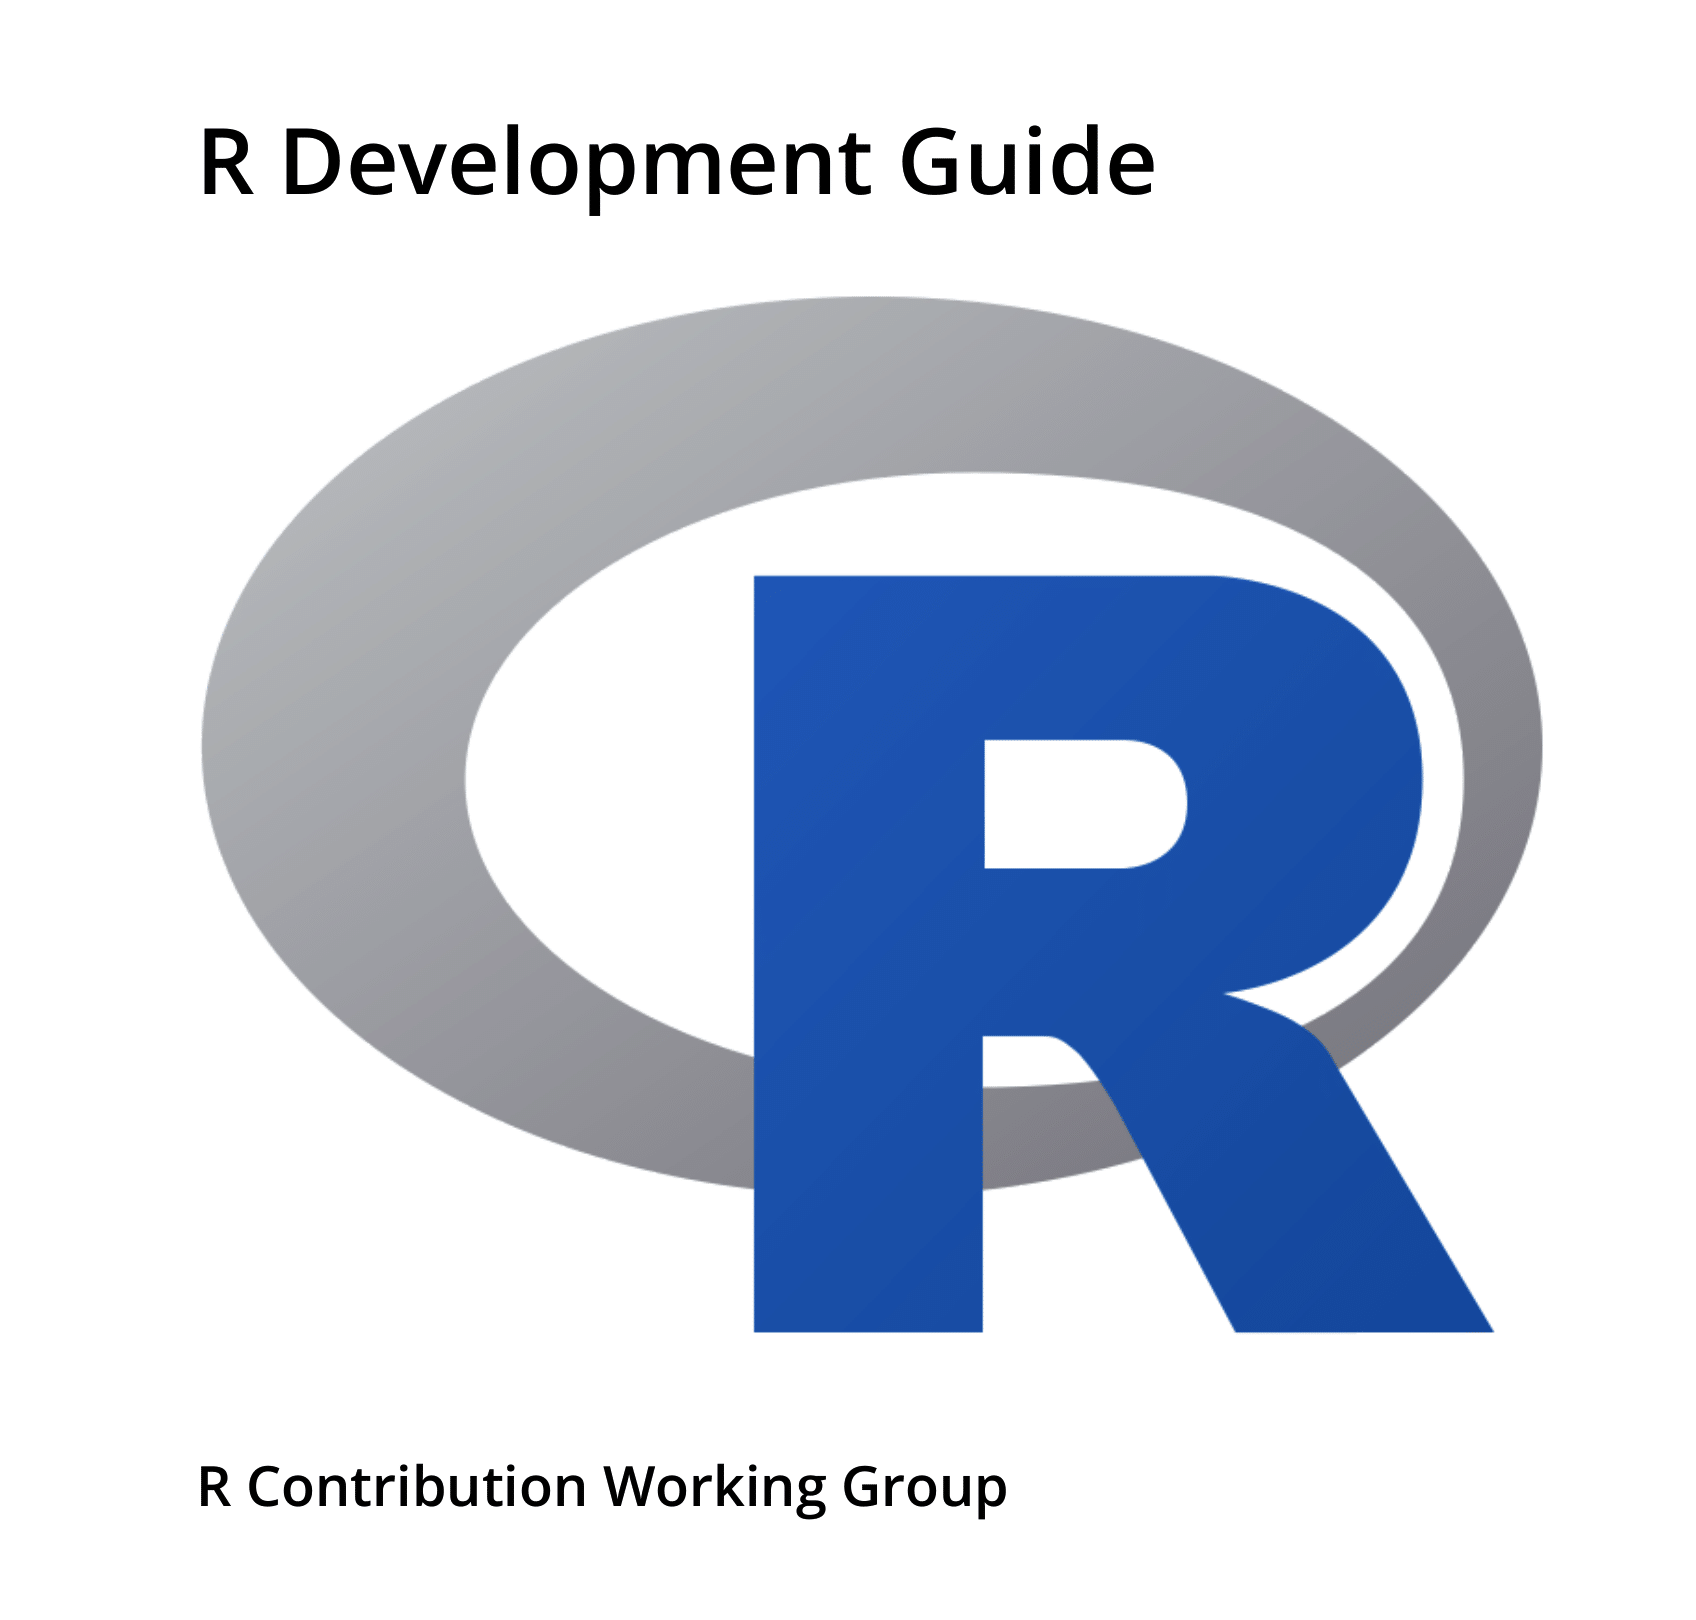 R Development Guide